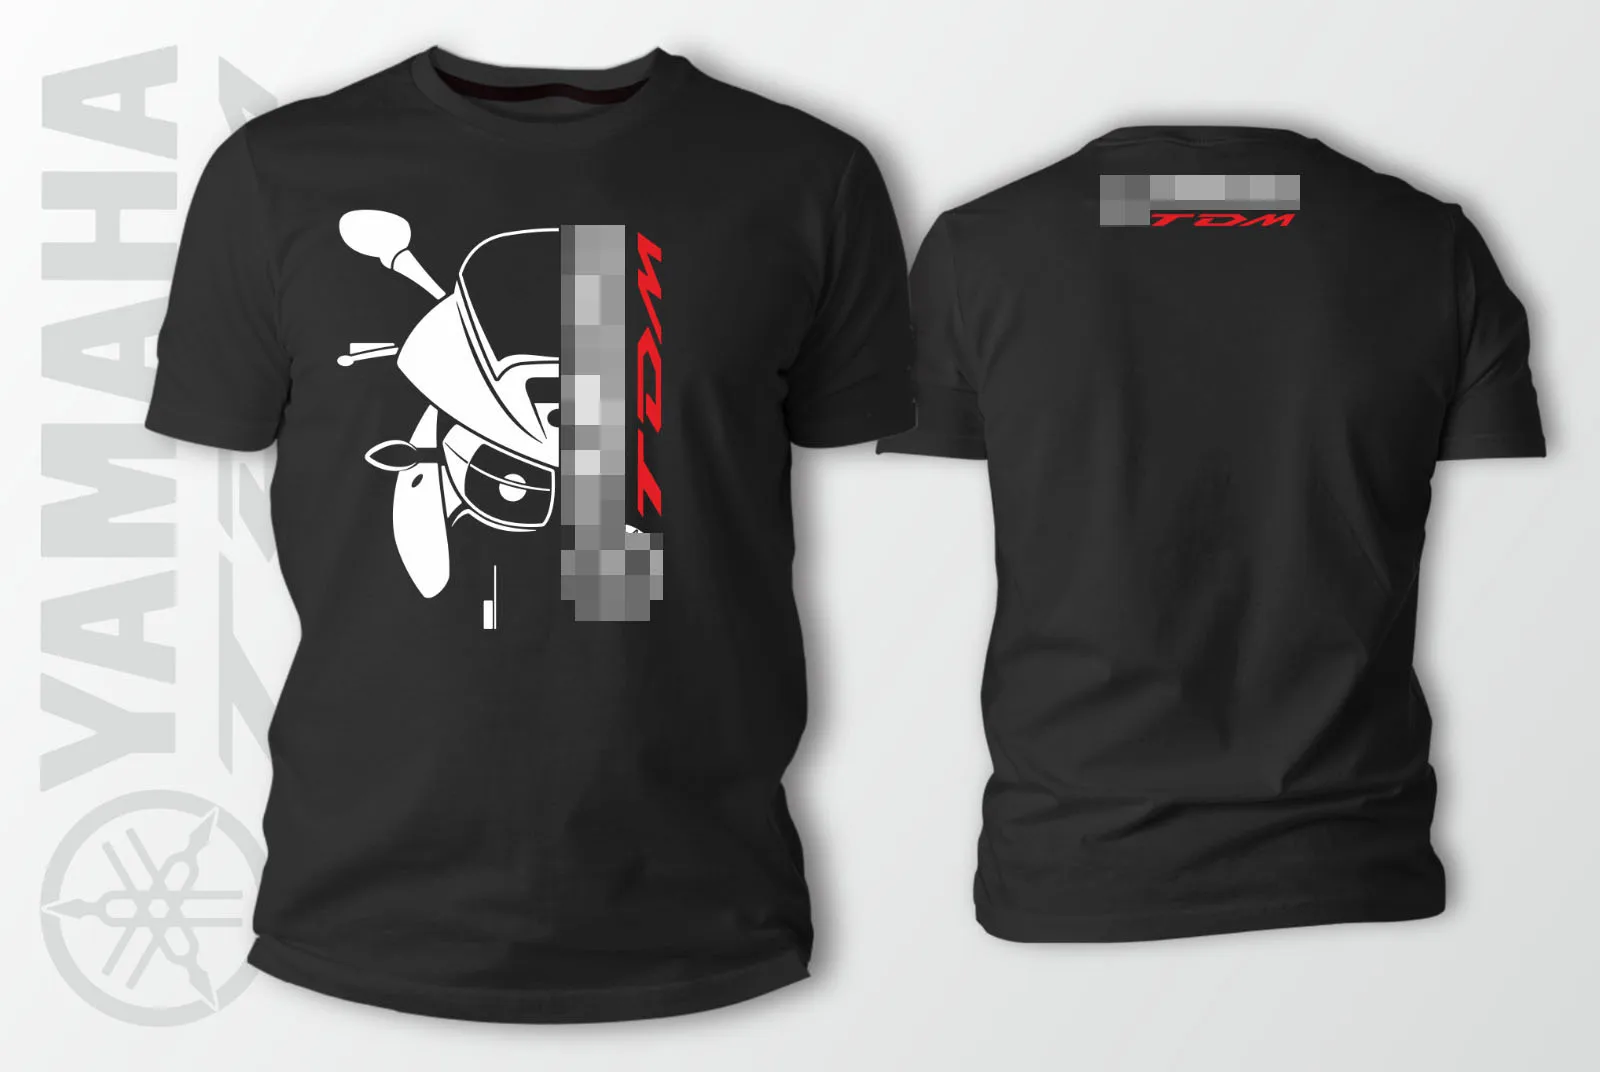 Двухсторонняя футболка Yama Tdm 900 Авто Черная Мужская футболка Летняя мужская футболка с круглым вырезом модные дешевые футболки на заказ